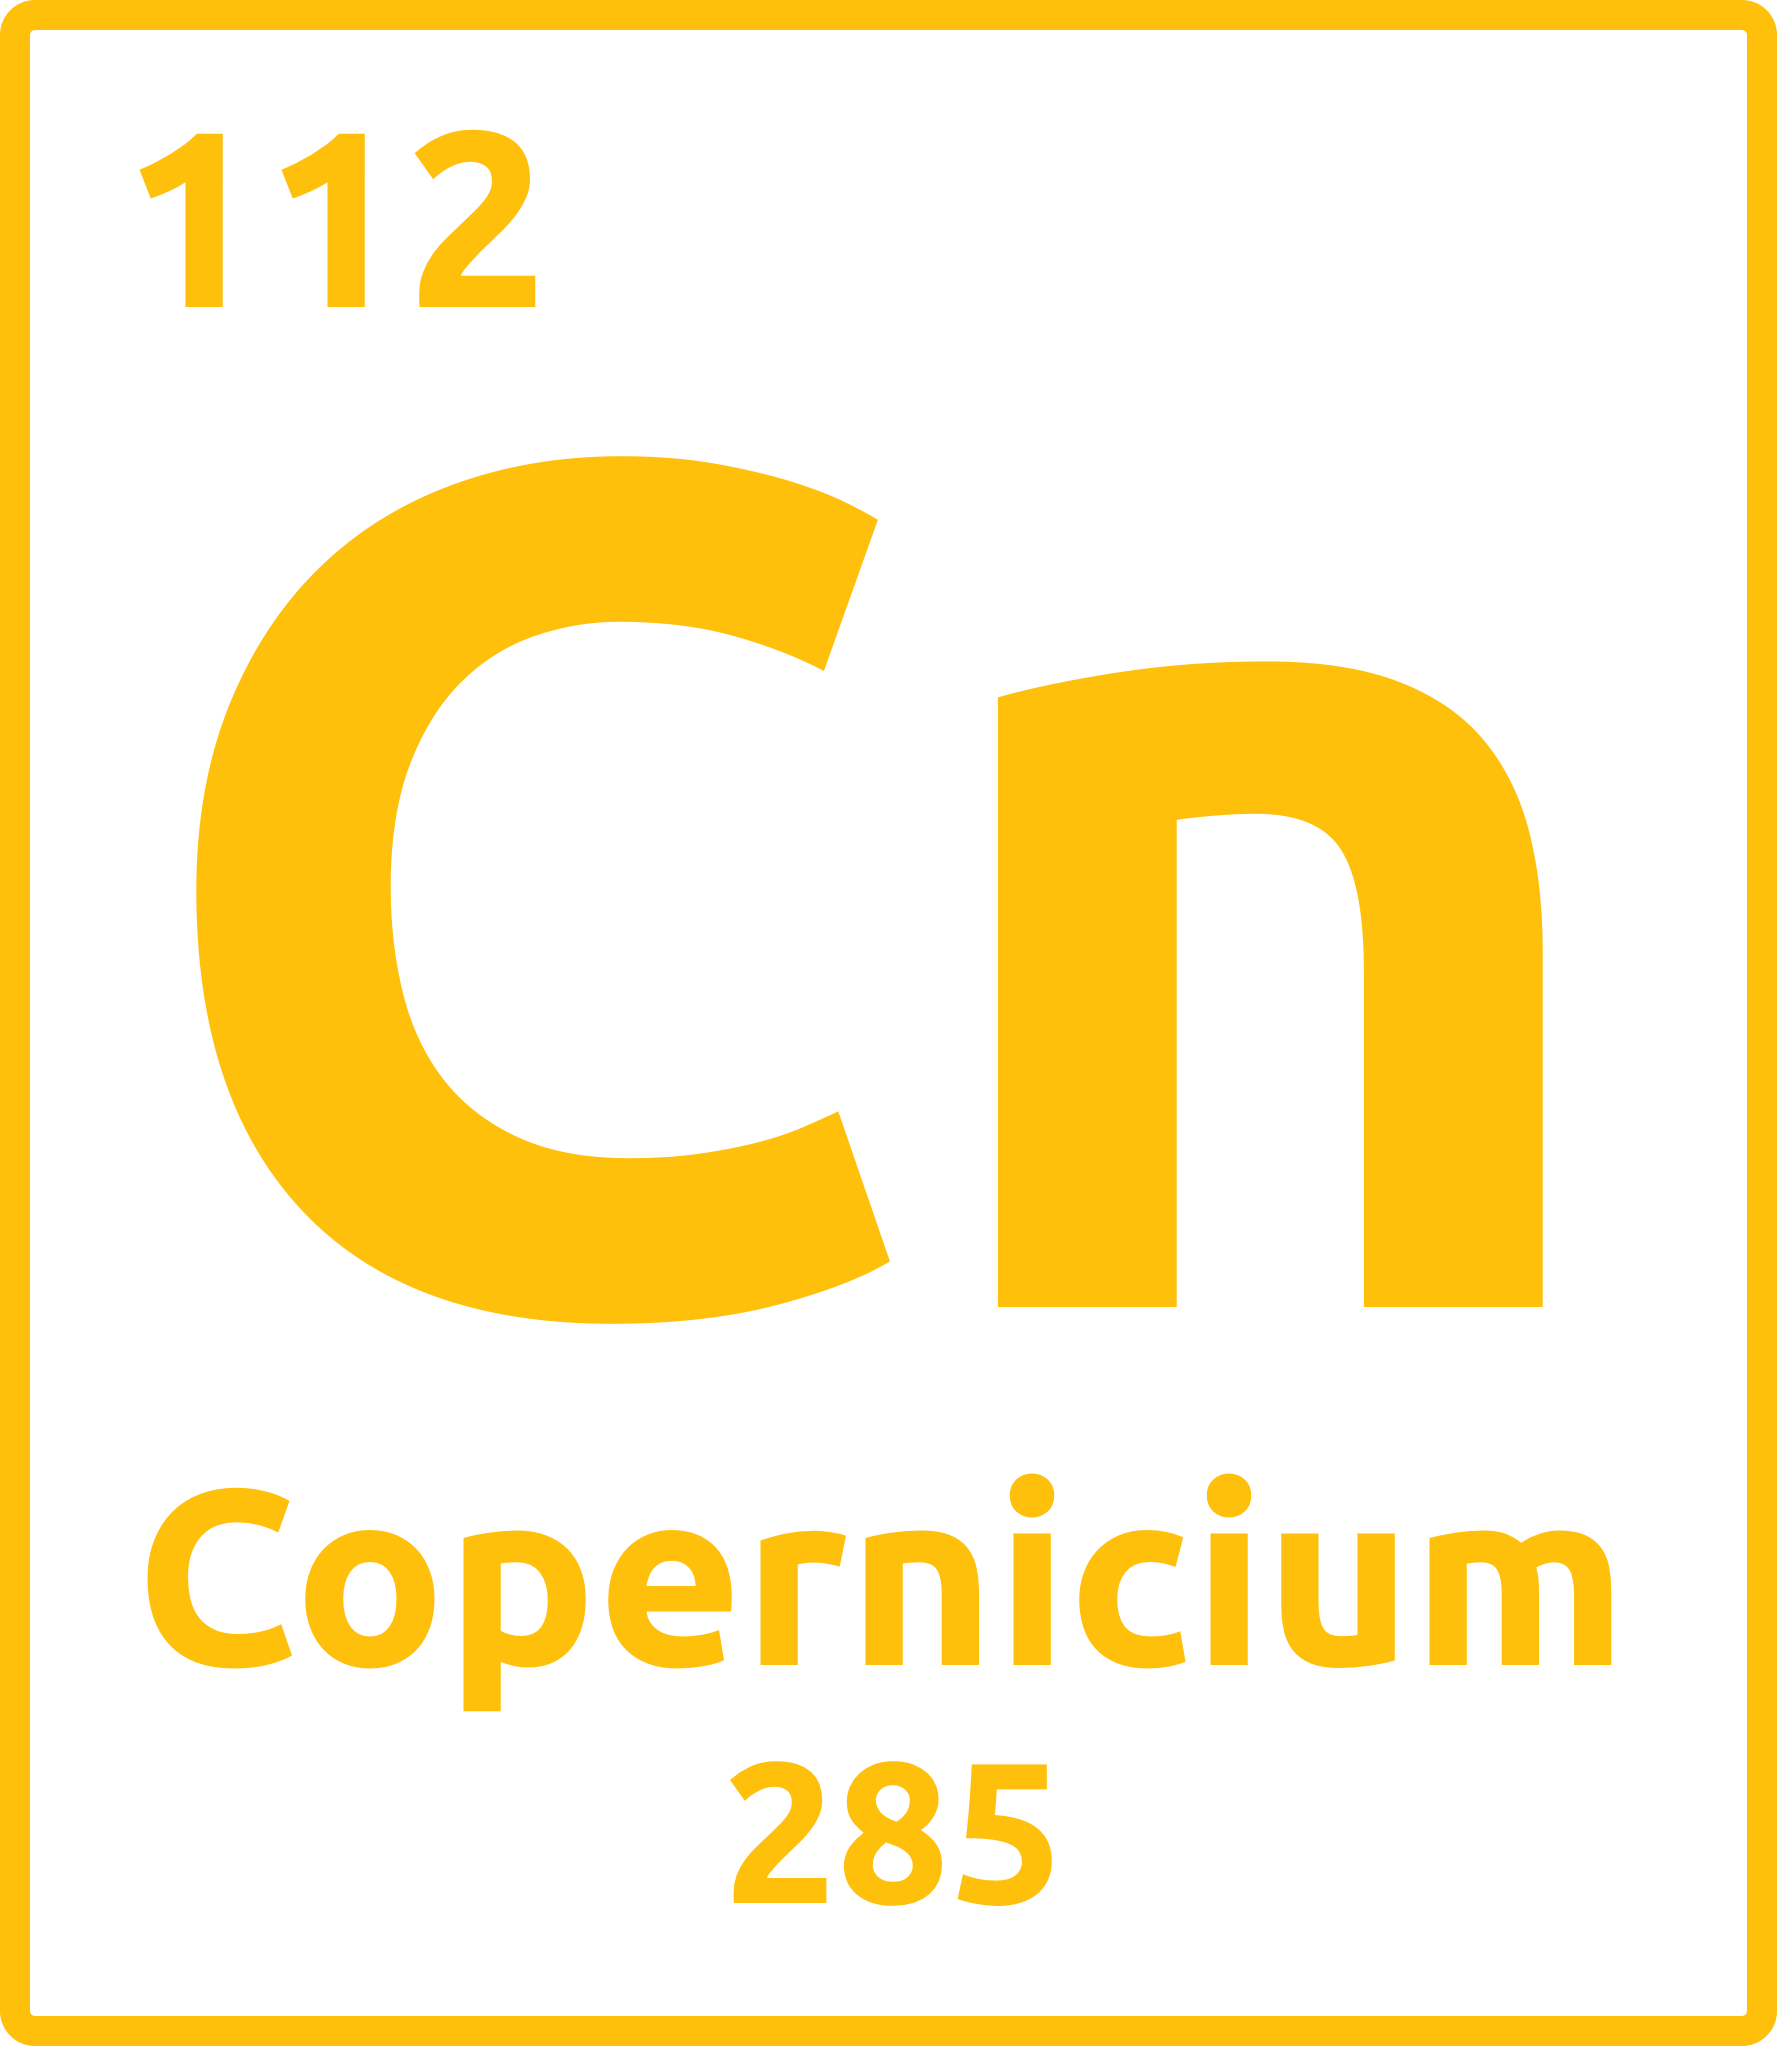 Copernicium 285